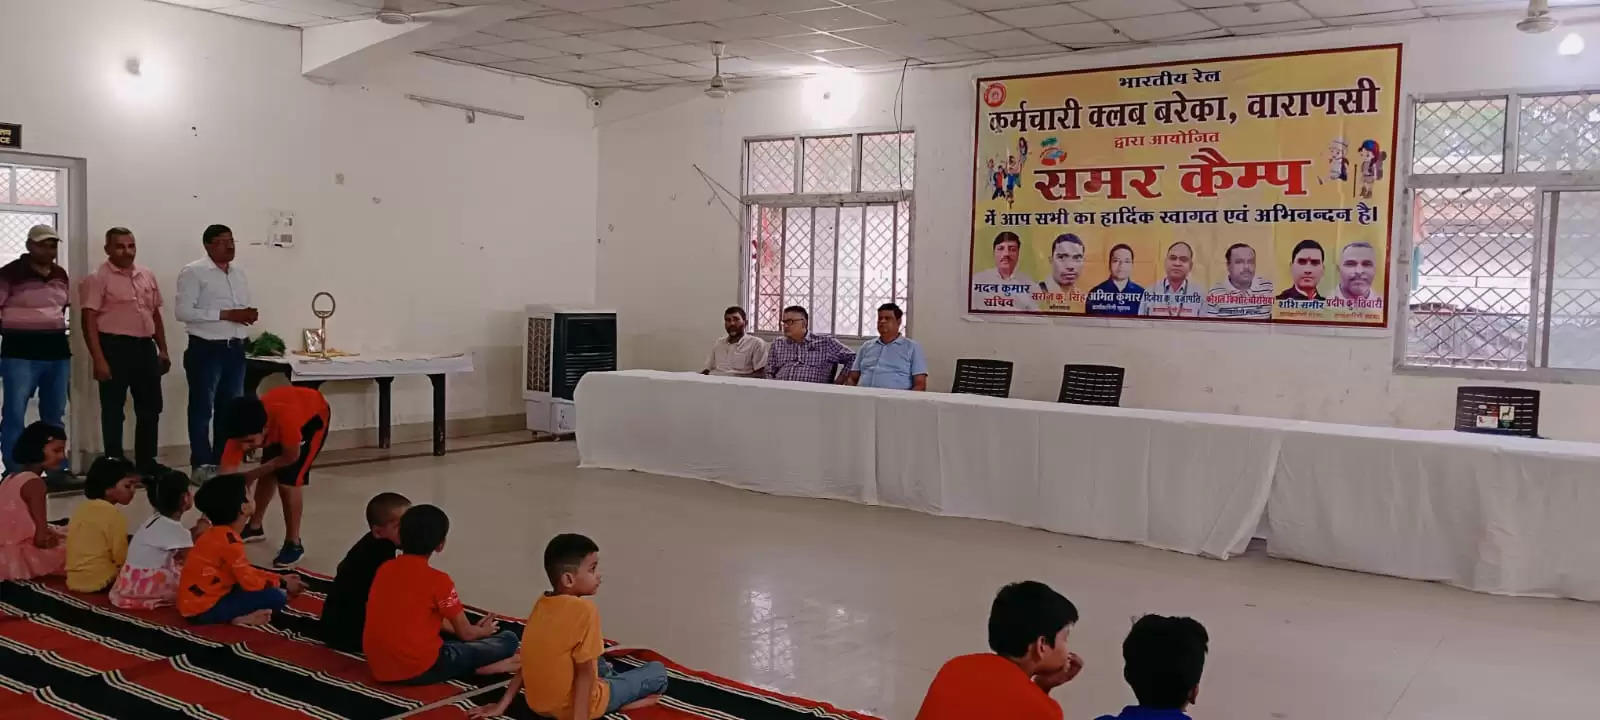 Varanasi News: बरेका कर्मचारी क्लब में समर कैंप का आयोजन